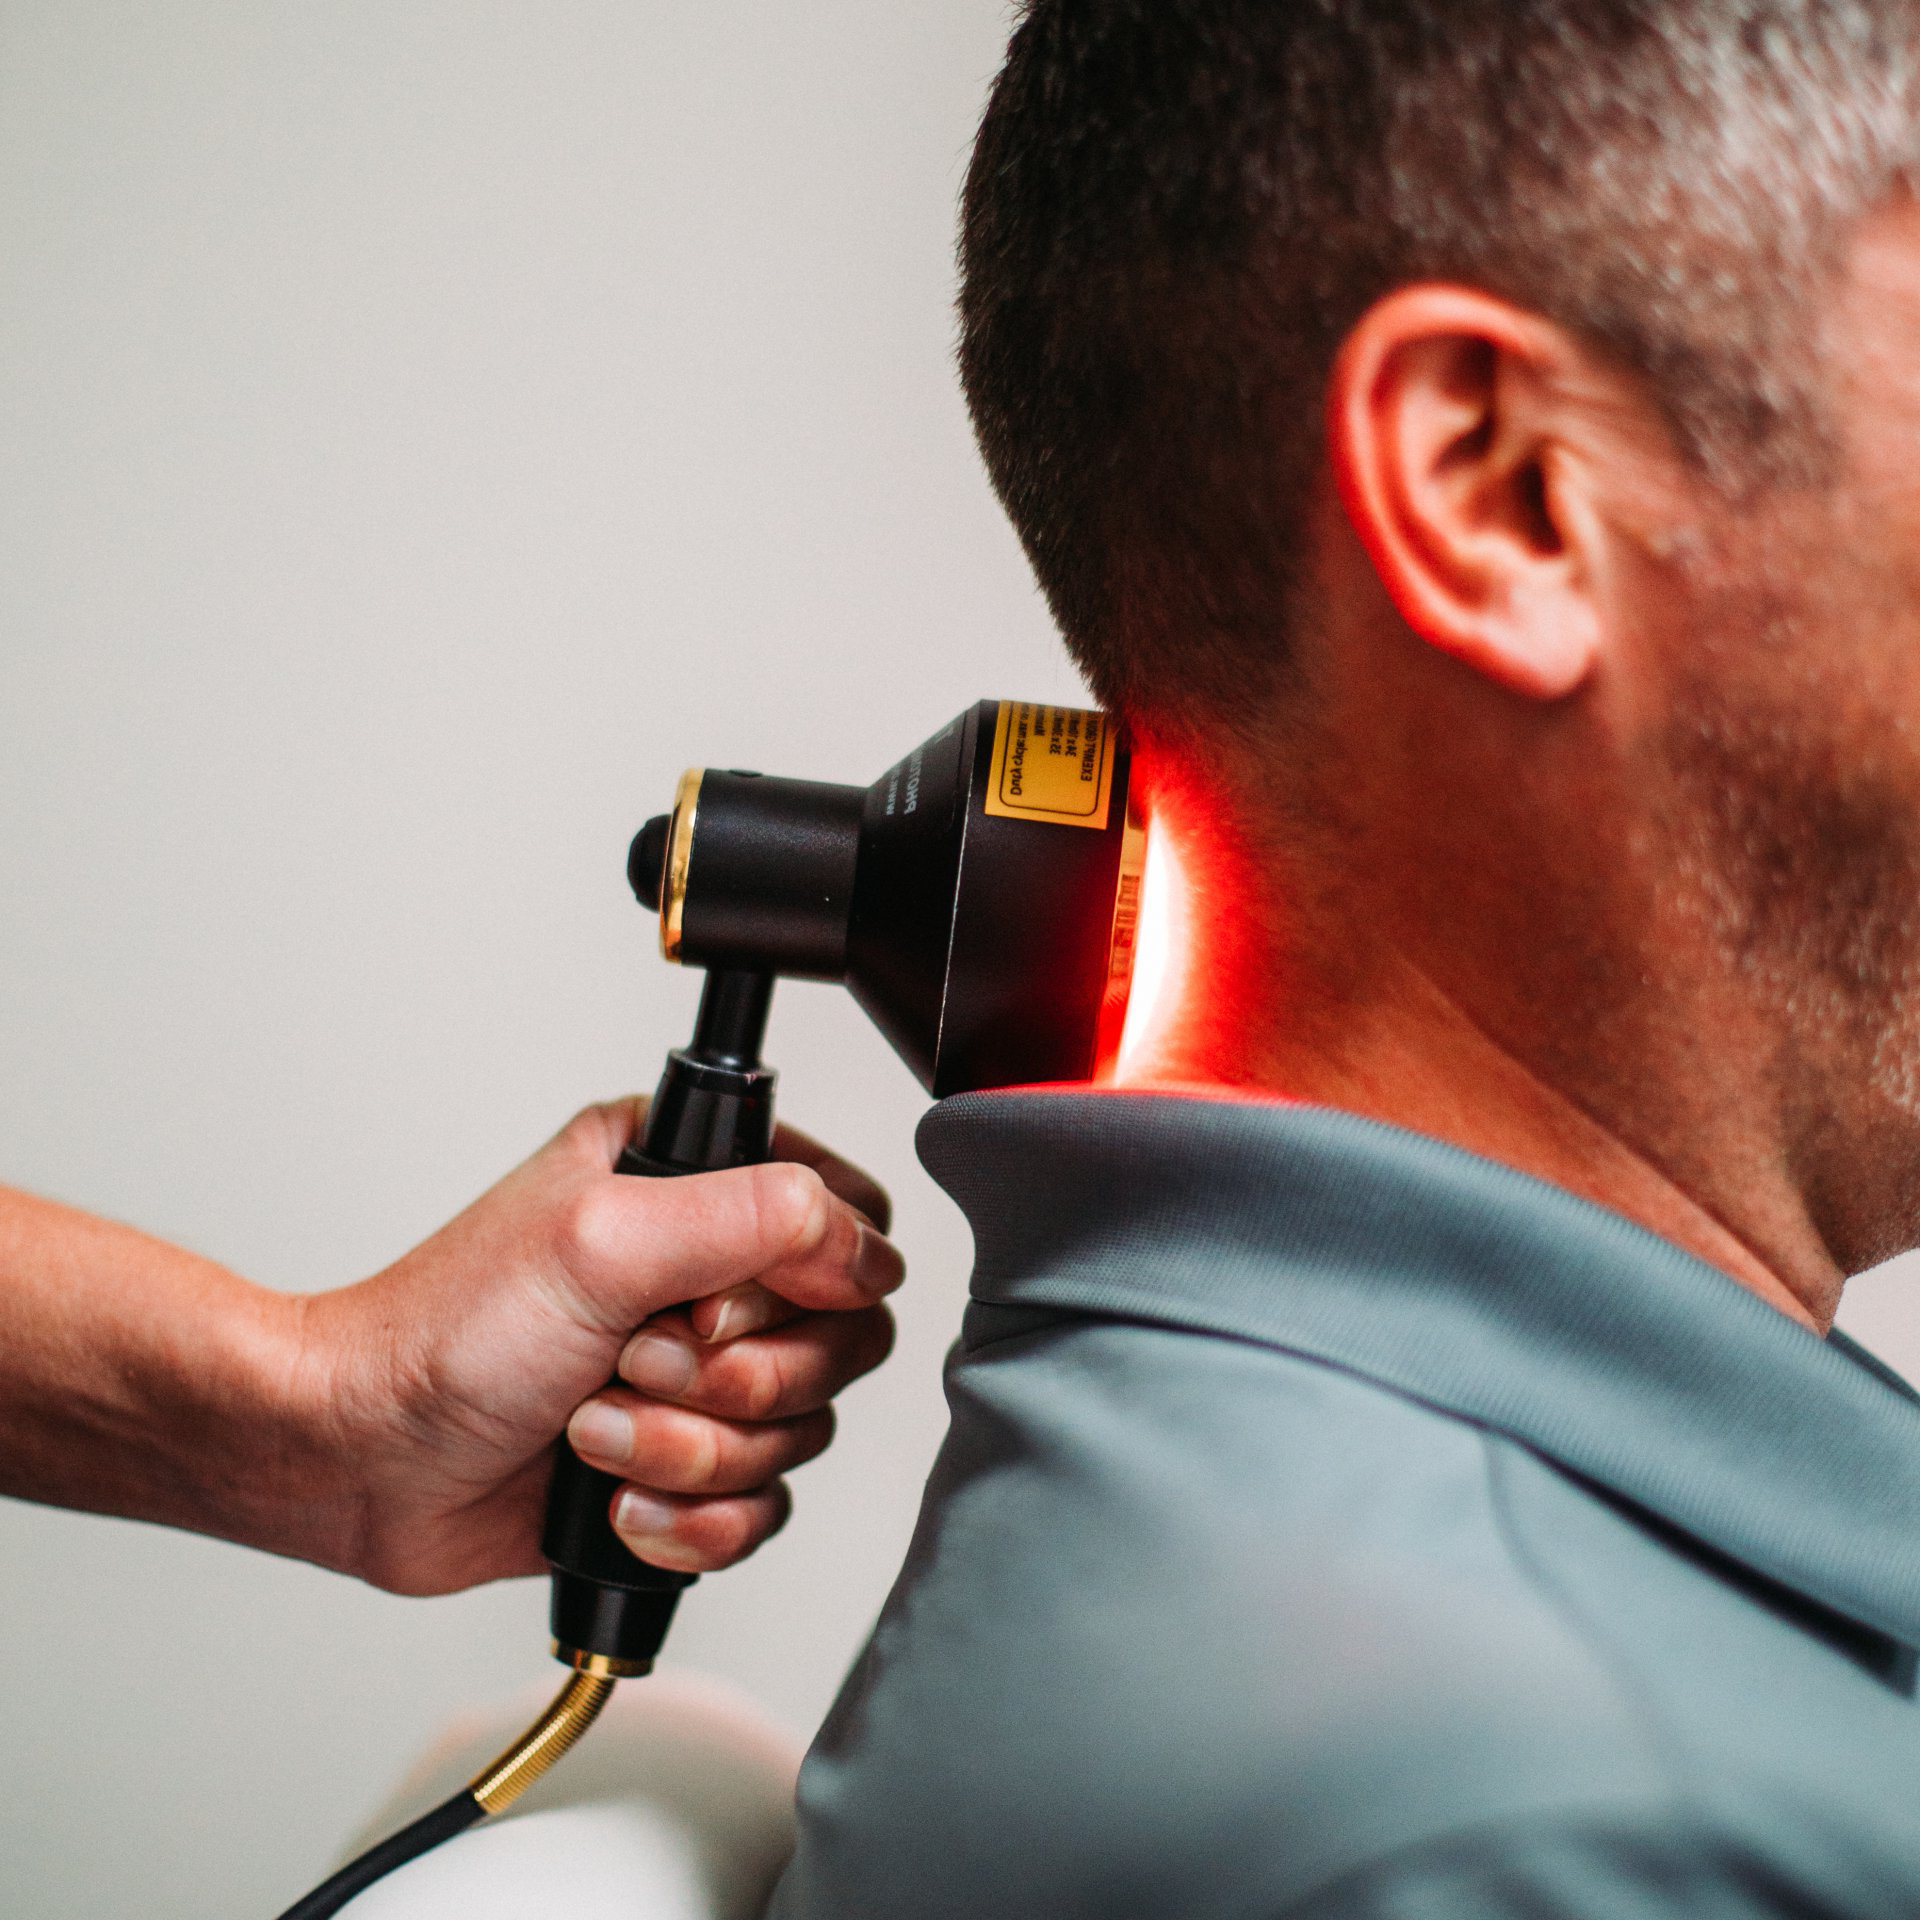 Man gets laser treatment on back